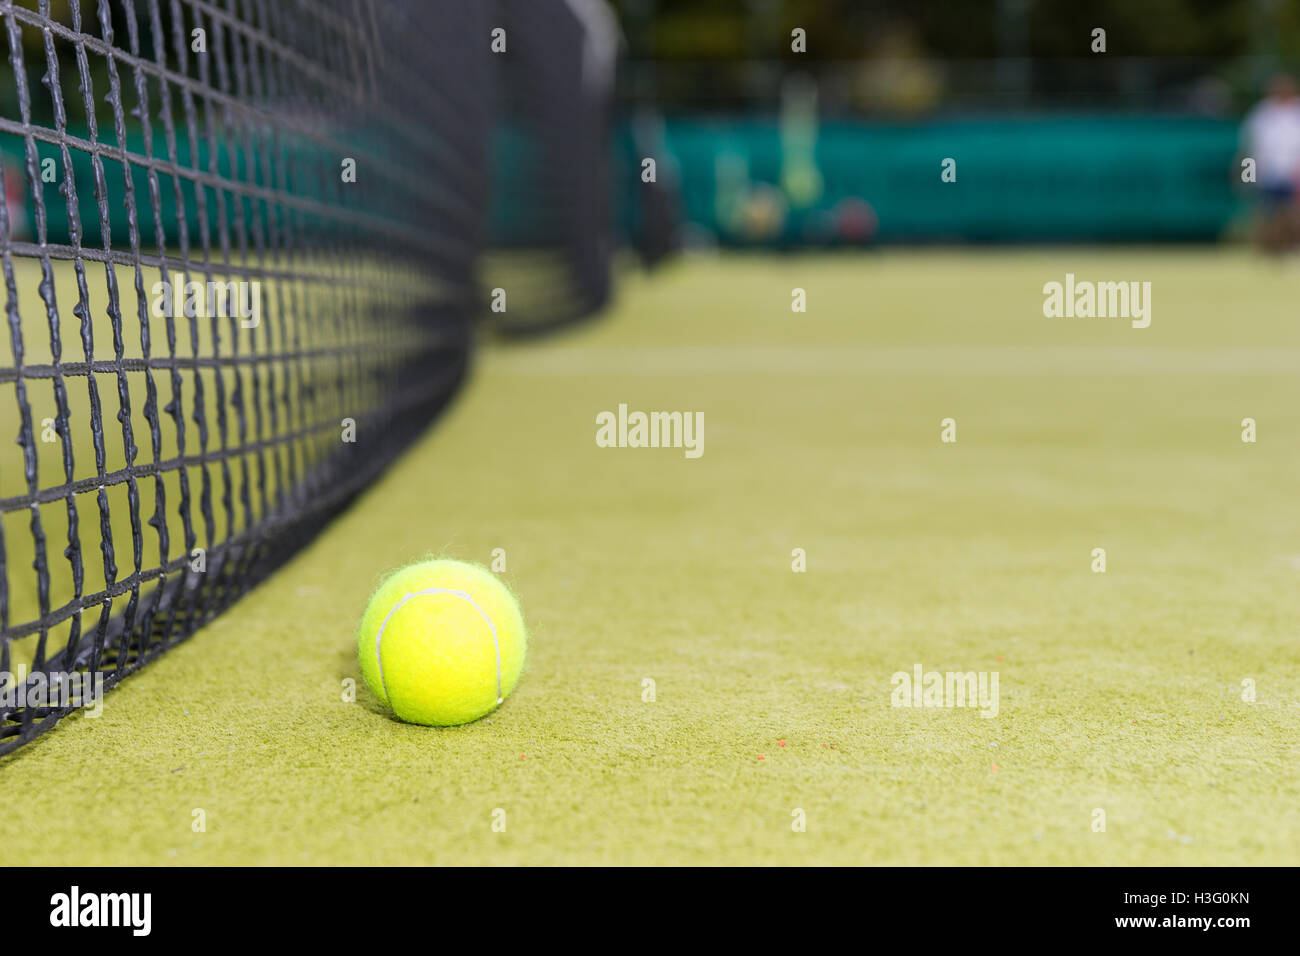 Palla da tennis si trova nei pressi della rete sulla corte di erba Foto  stock - Alamy